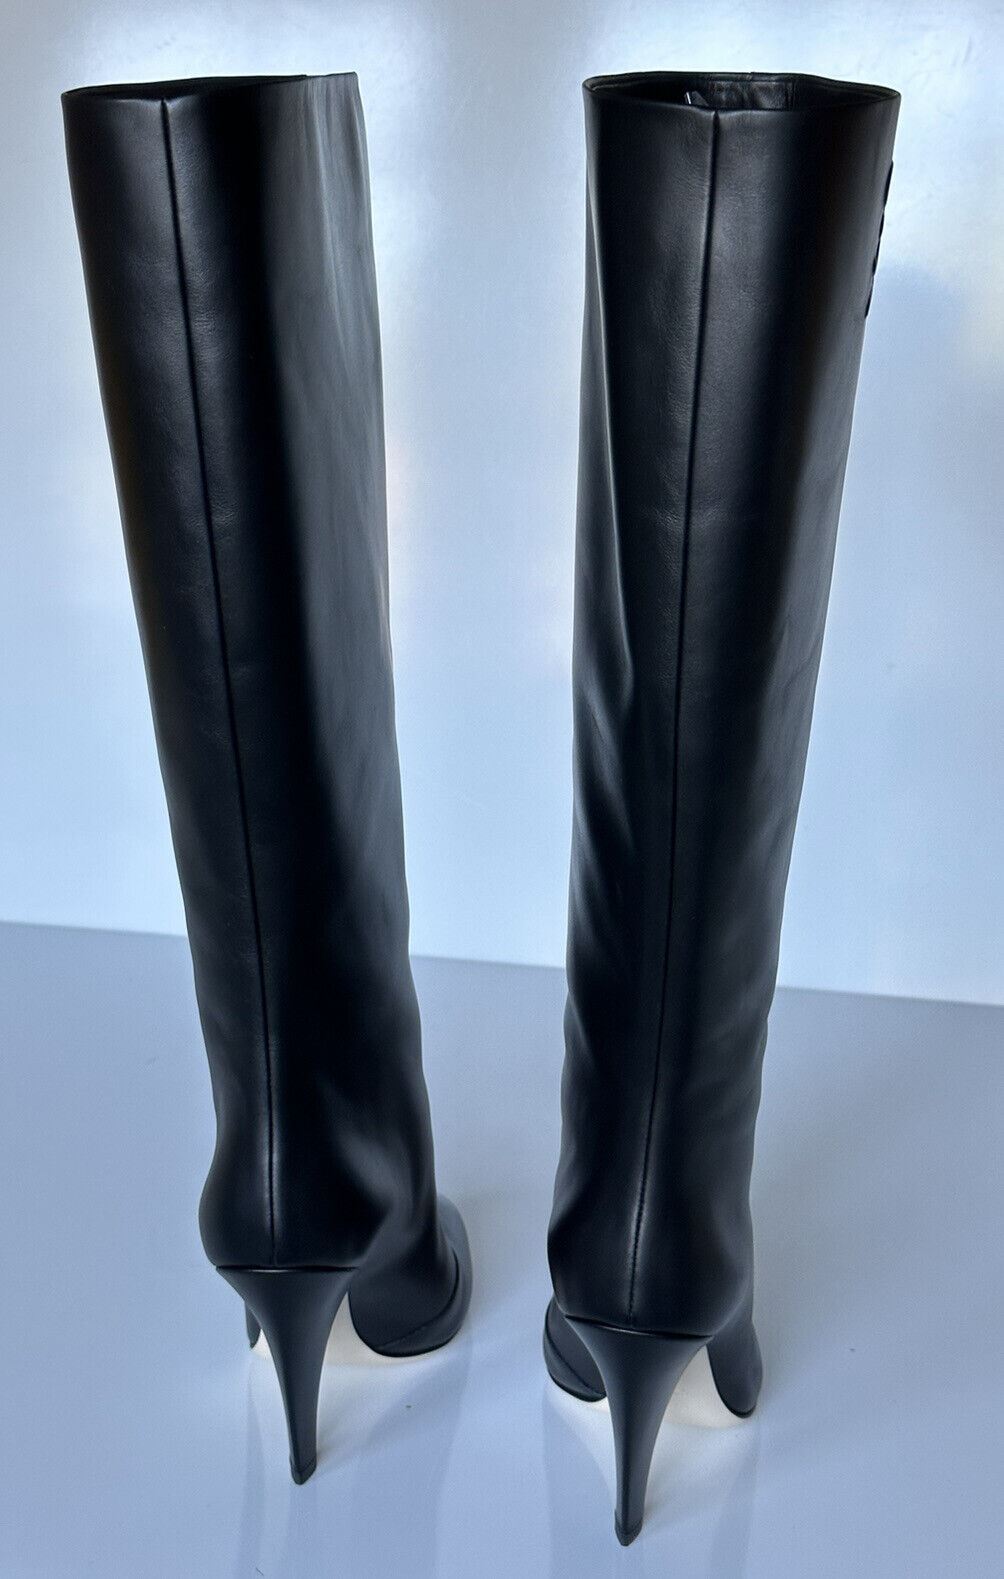 NIB 1550 долларов США Черные кожаные сапоги до колена Fendi Karligraphy 8 US (38 EU) 8W8223 